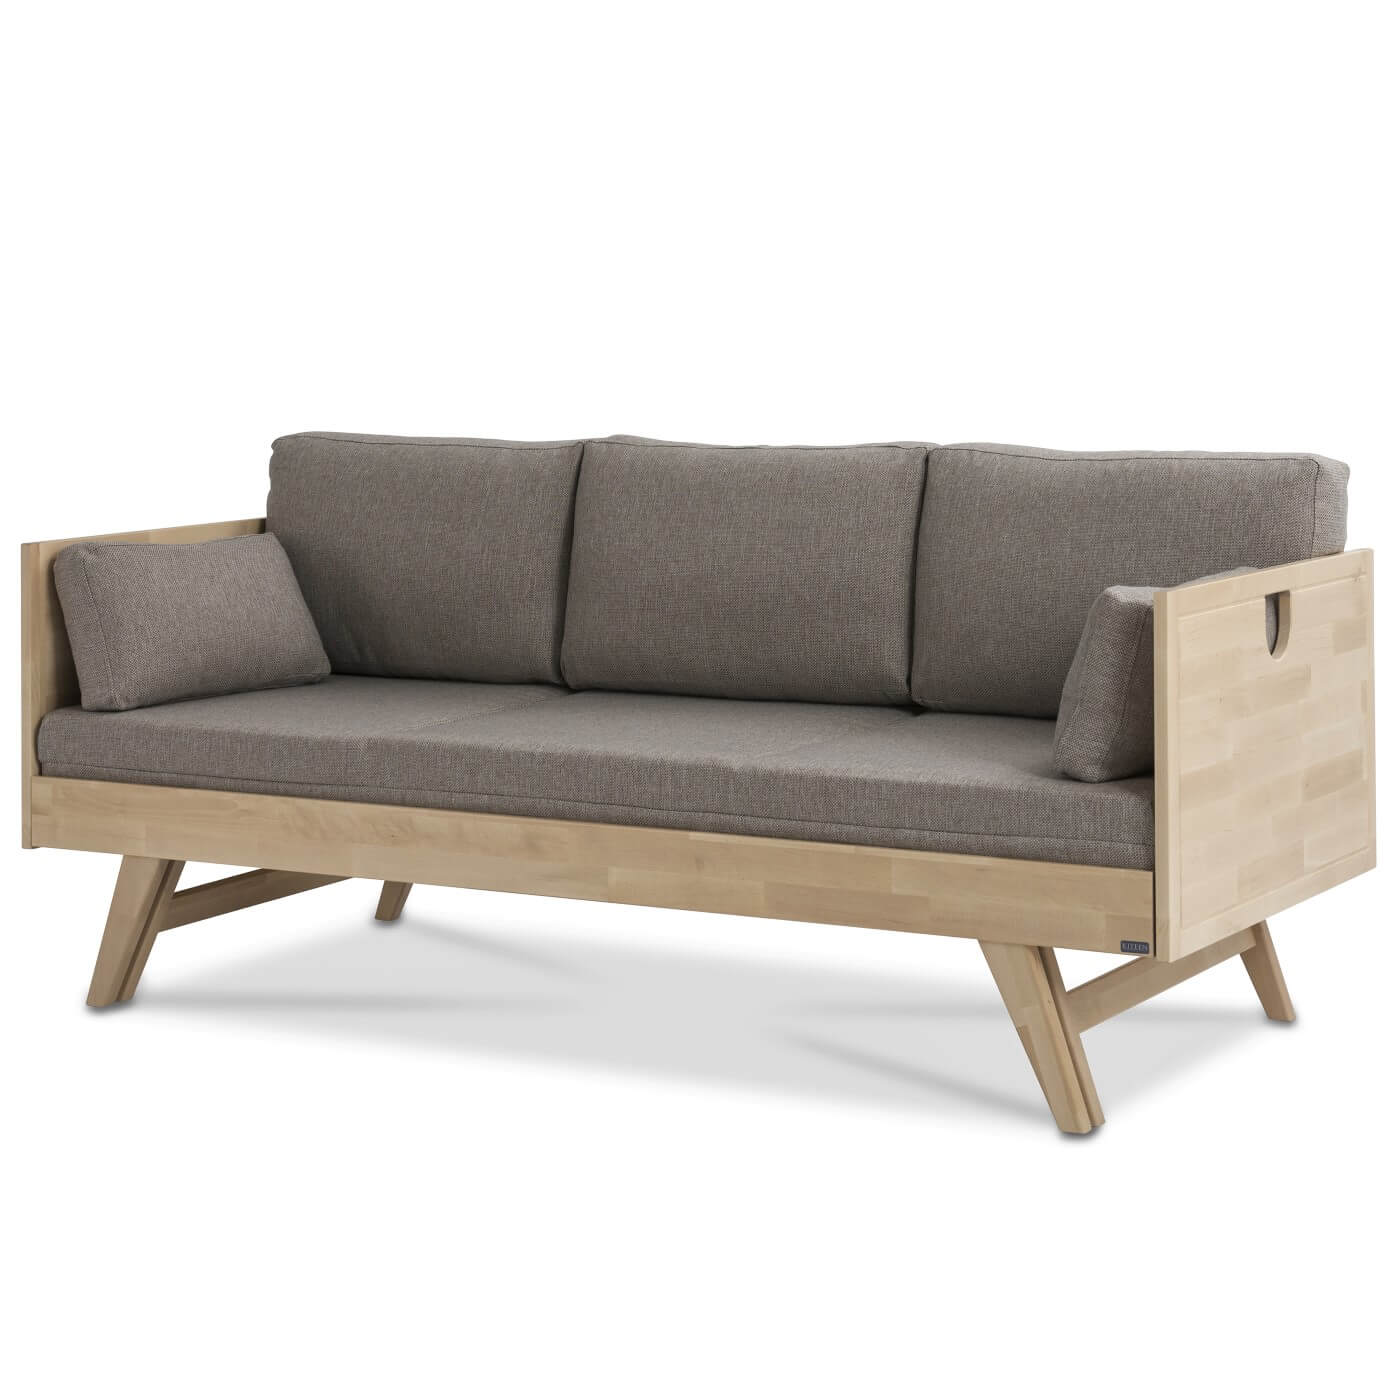 Sofa drewniana NOTTE na wysokich nogach, z funkcją spania, z materacem i 5 poduszkami w kolorze beżowym. Nowoczesne skandynawskie wzornictwo